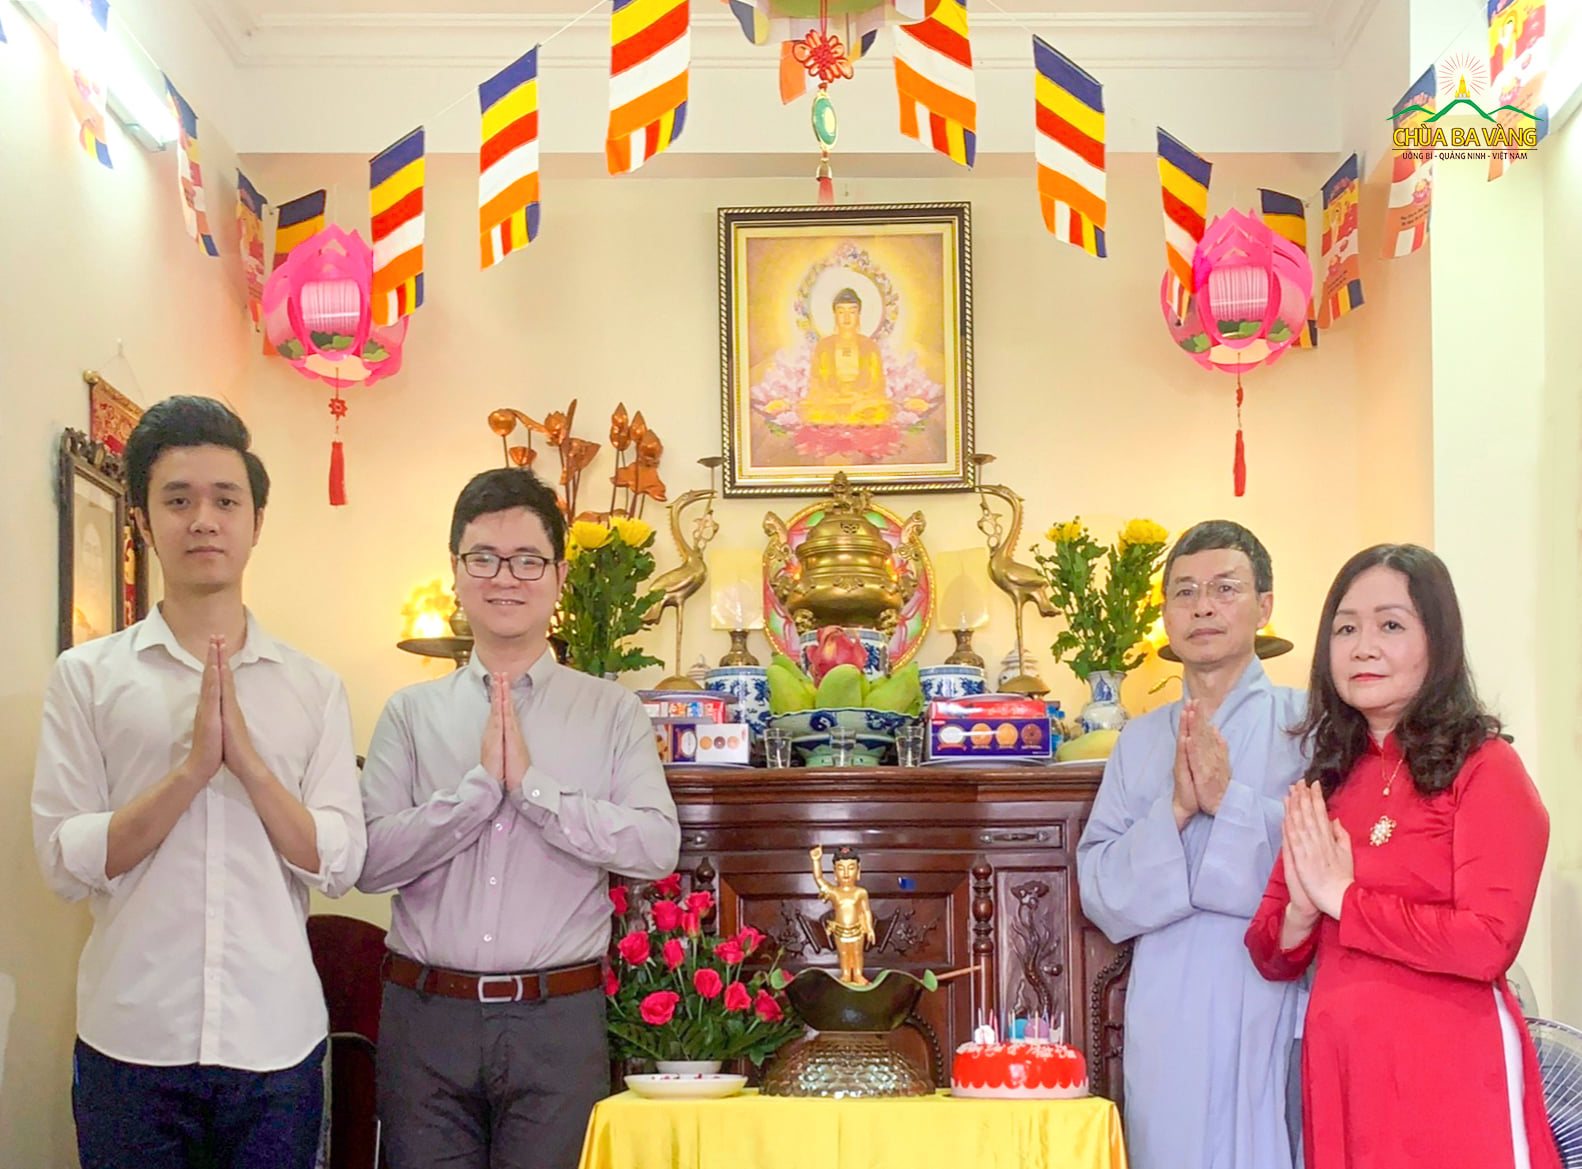 Các thành viên trong gia đình đều chung một lòng hướng Phật, đều hạnh phúc khi cùng nhau tổ chức Phật đản tại nhà.  